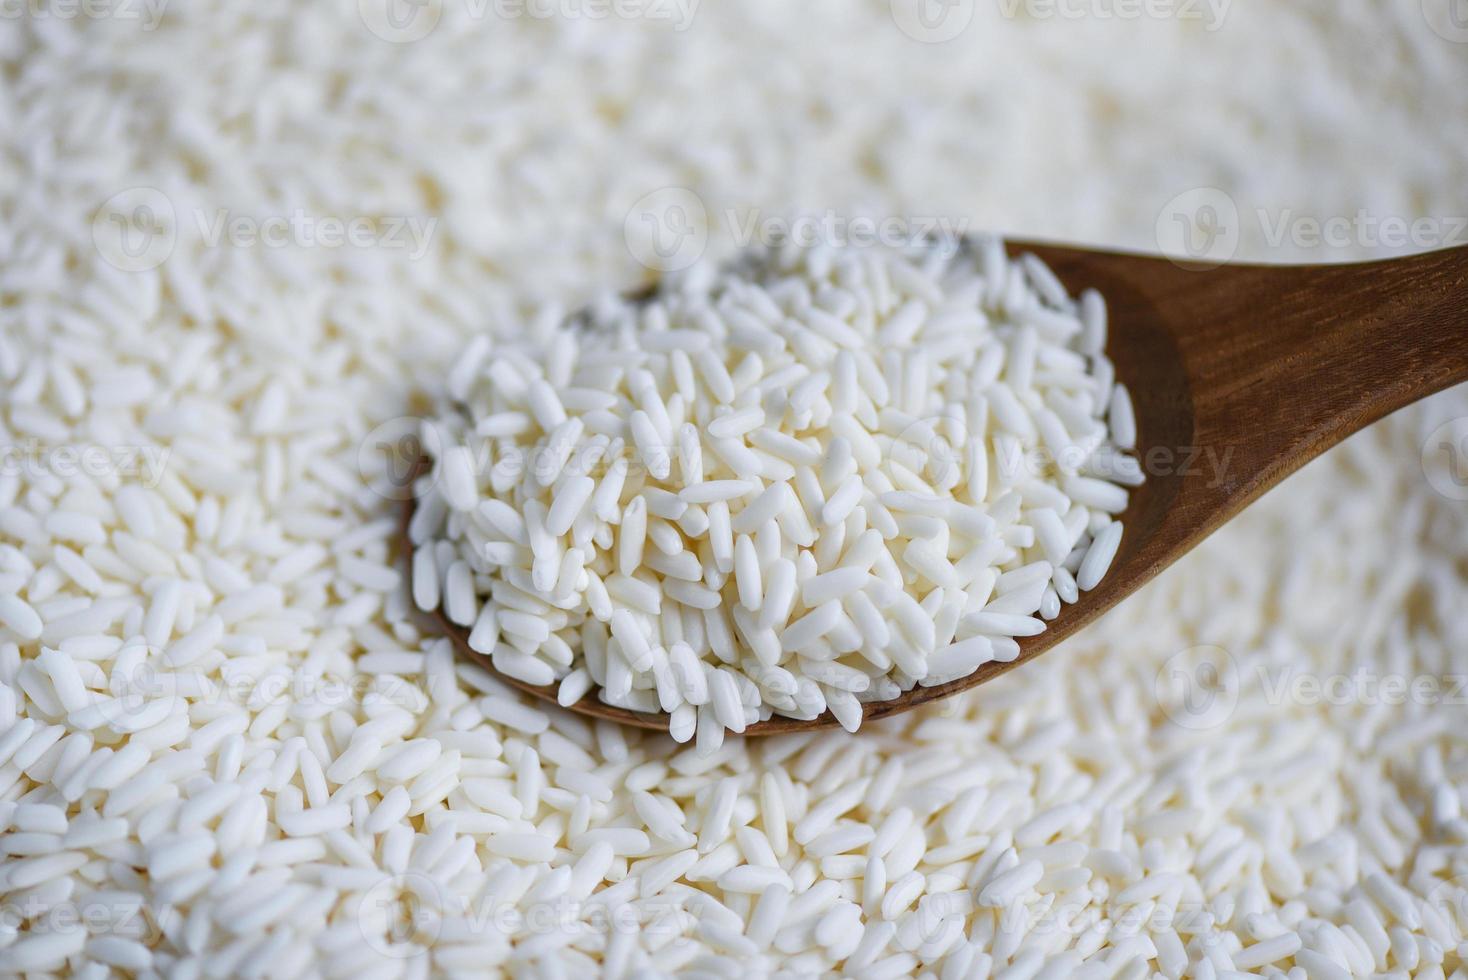 Arroz blanco jazmín en cuchara de madera en el saco, cosecha de arroz y concepto de cocción de granos alimenticios foto